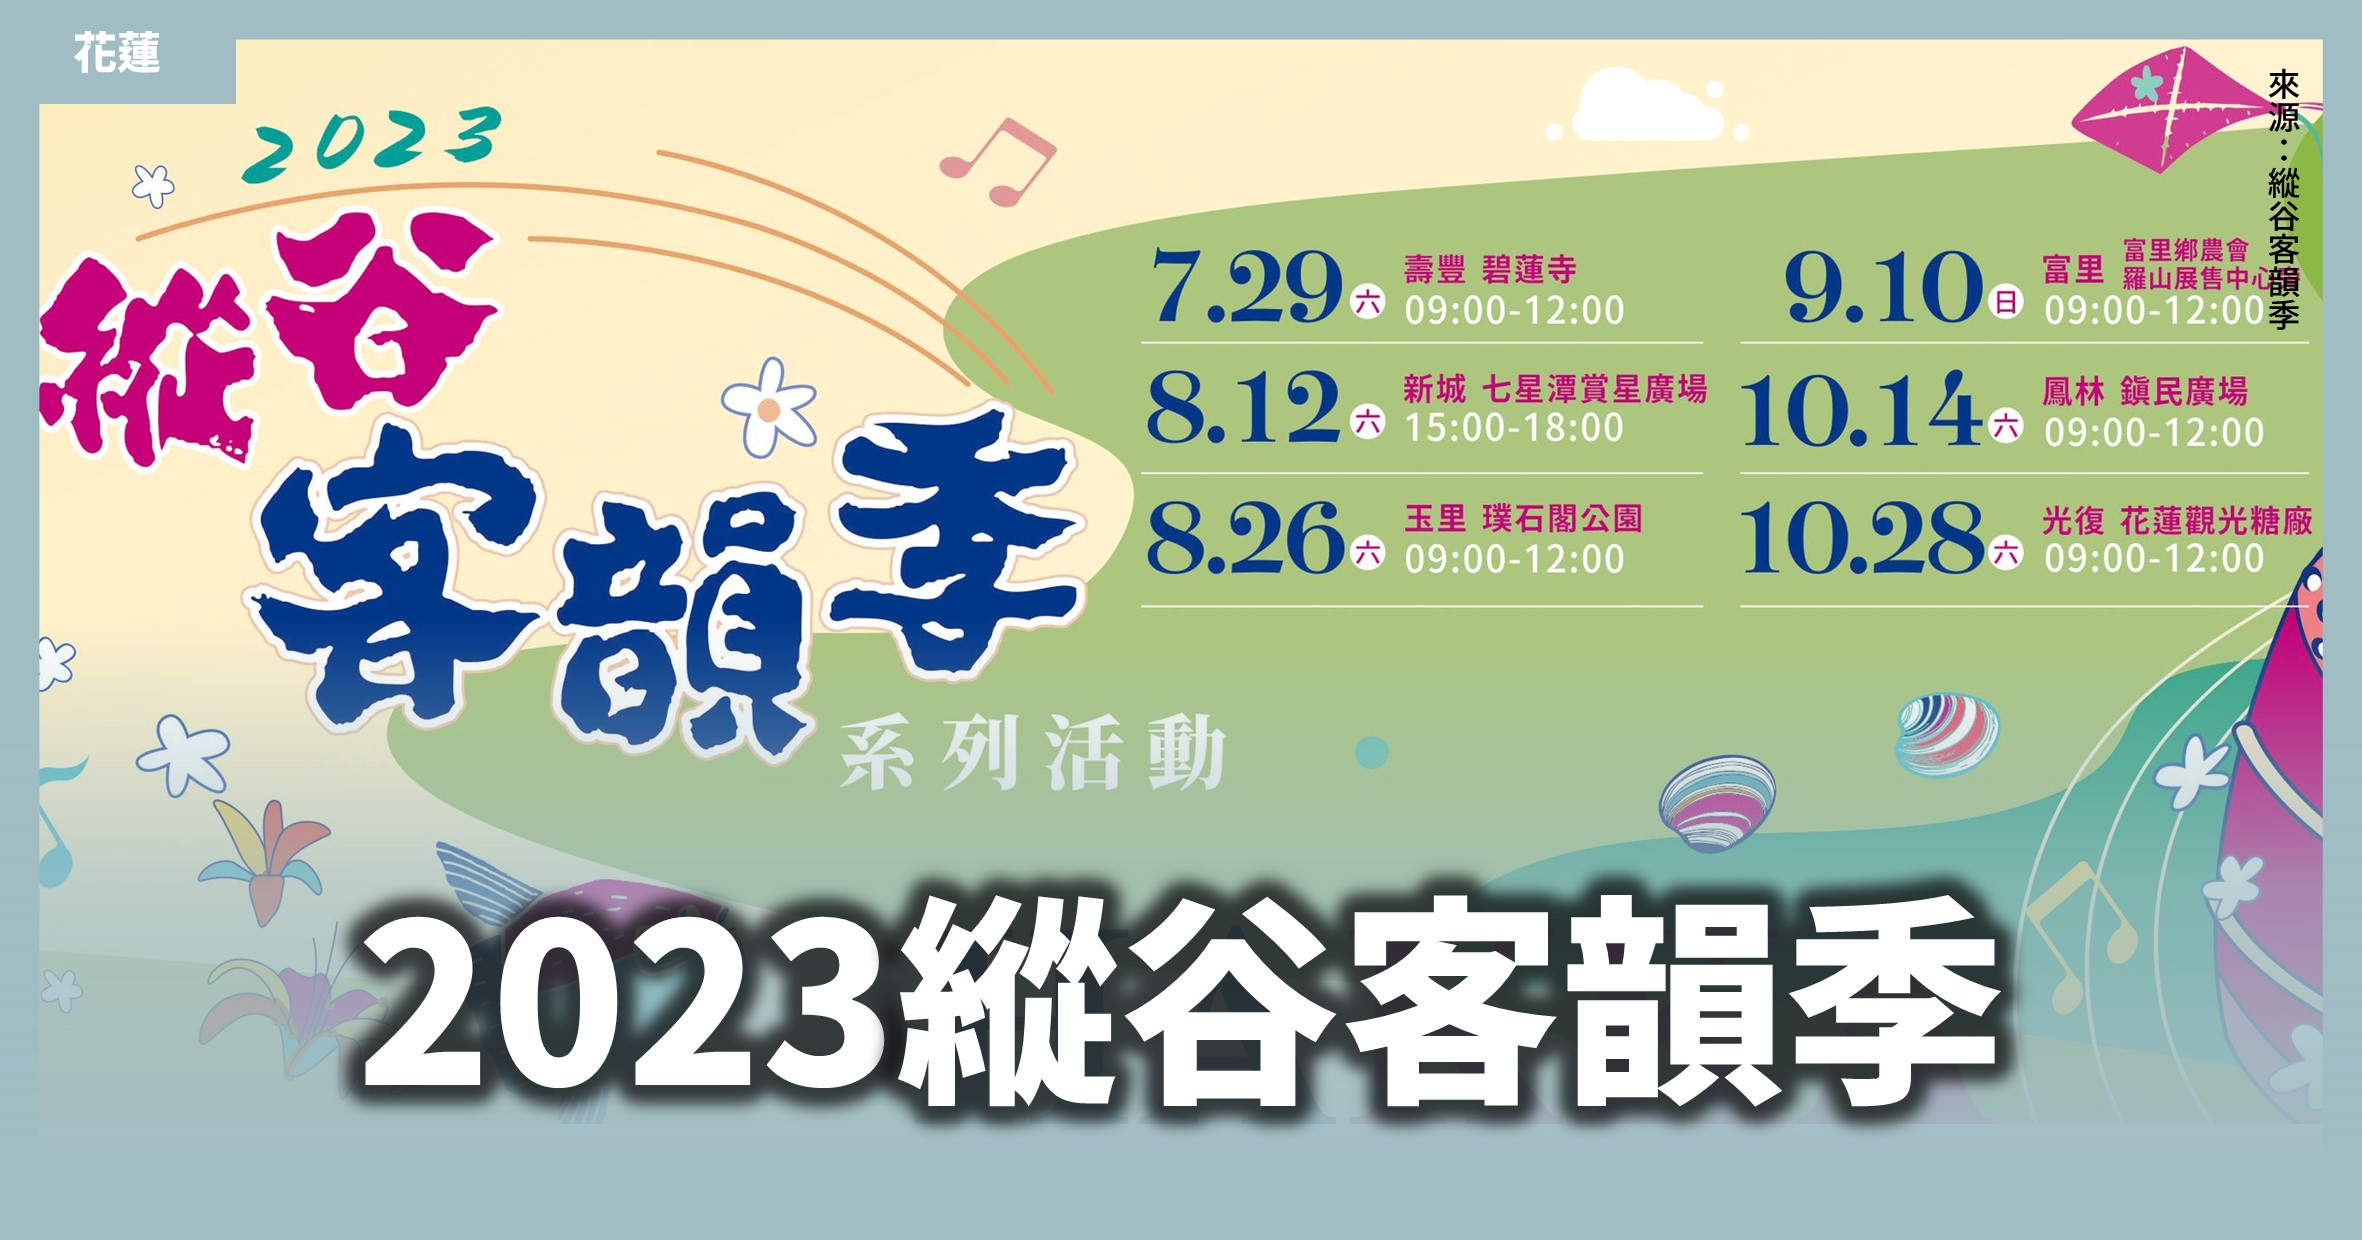 花蓮「2023縱谷客韻季」6場週末玩遍花蓮！歌手、鼓藝、市集精彩登場